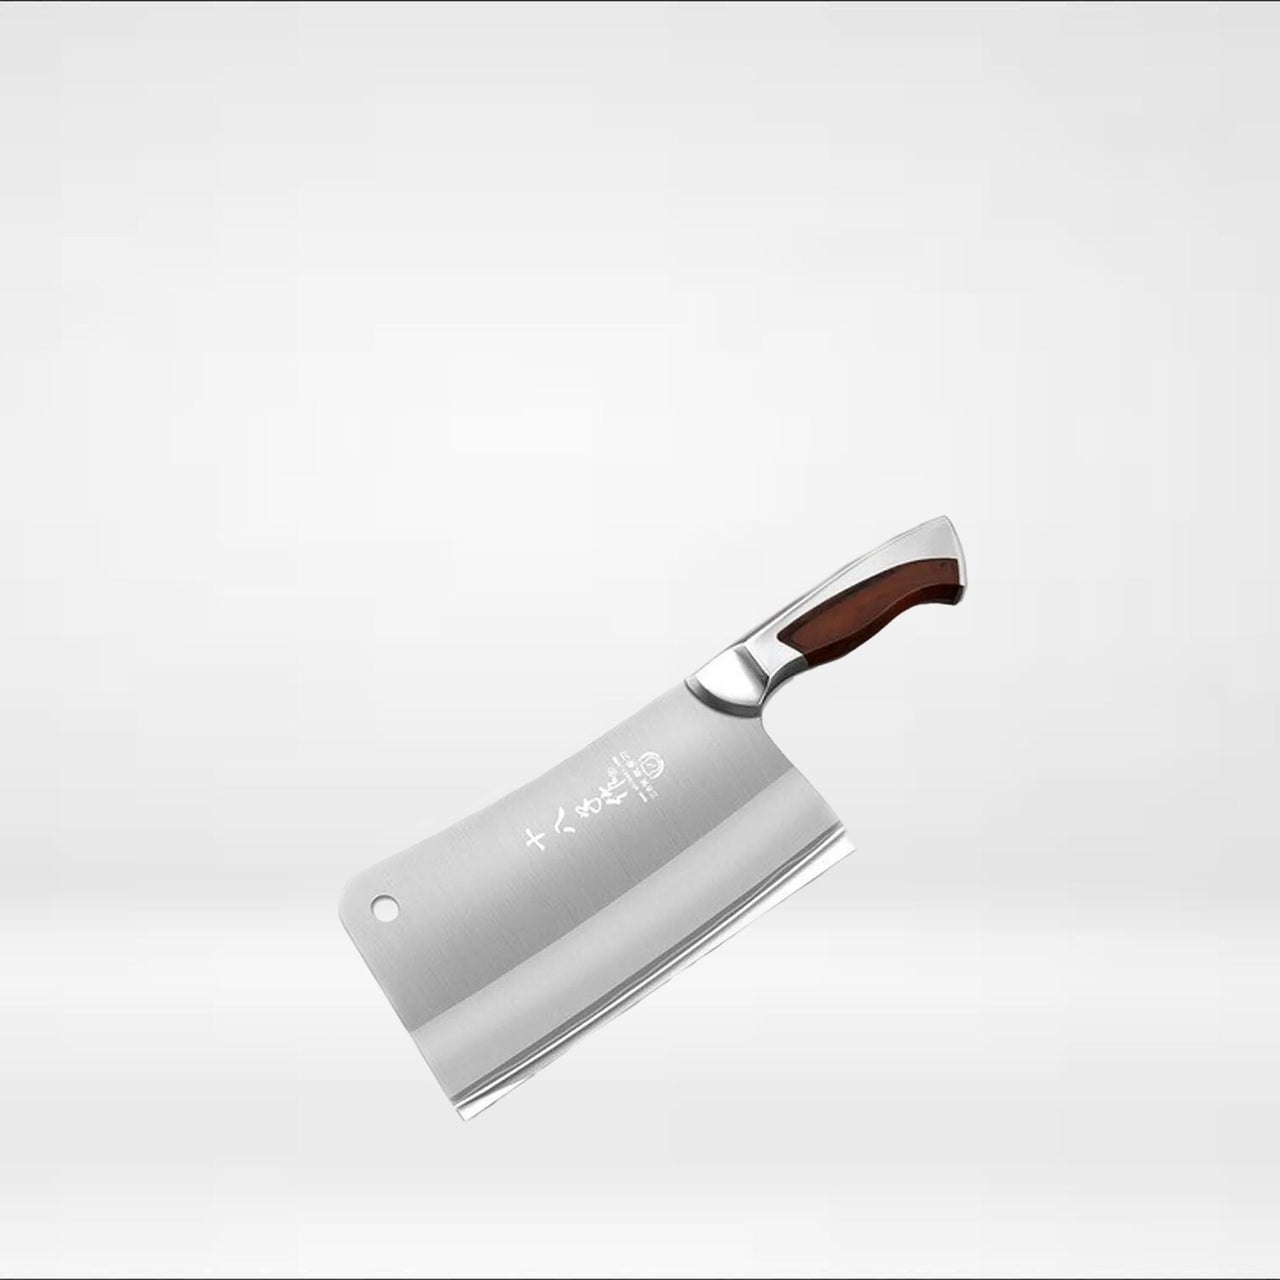 TUO Couteau hachoir - Couteau hachoir professionnel de 17,8 cm